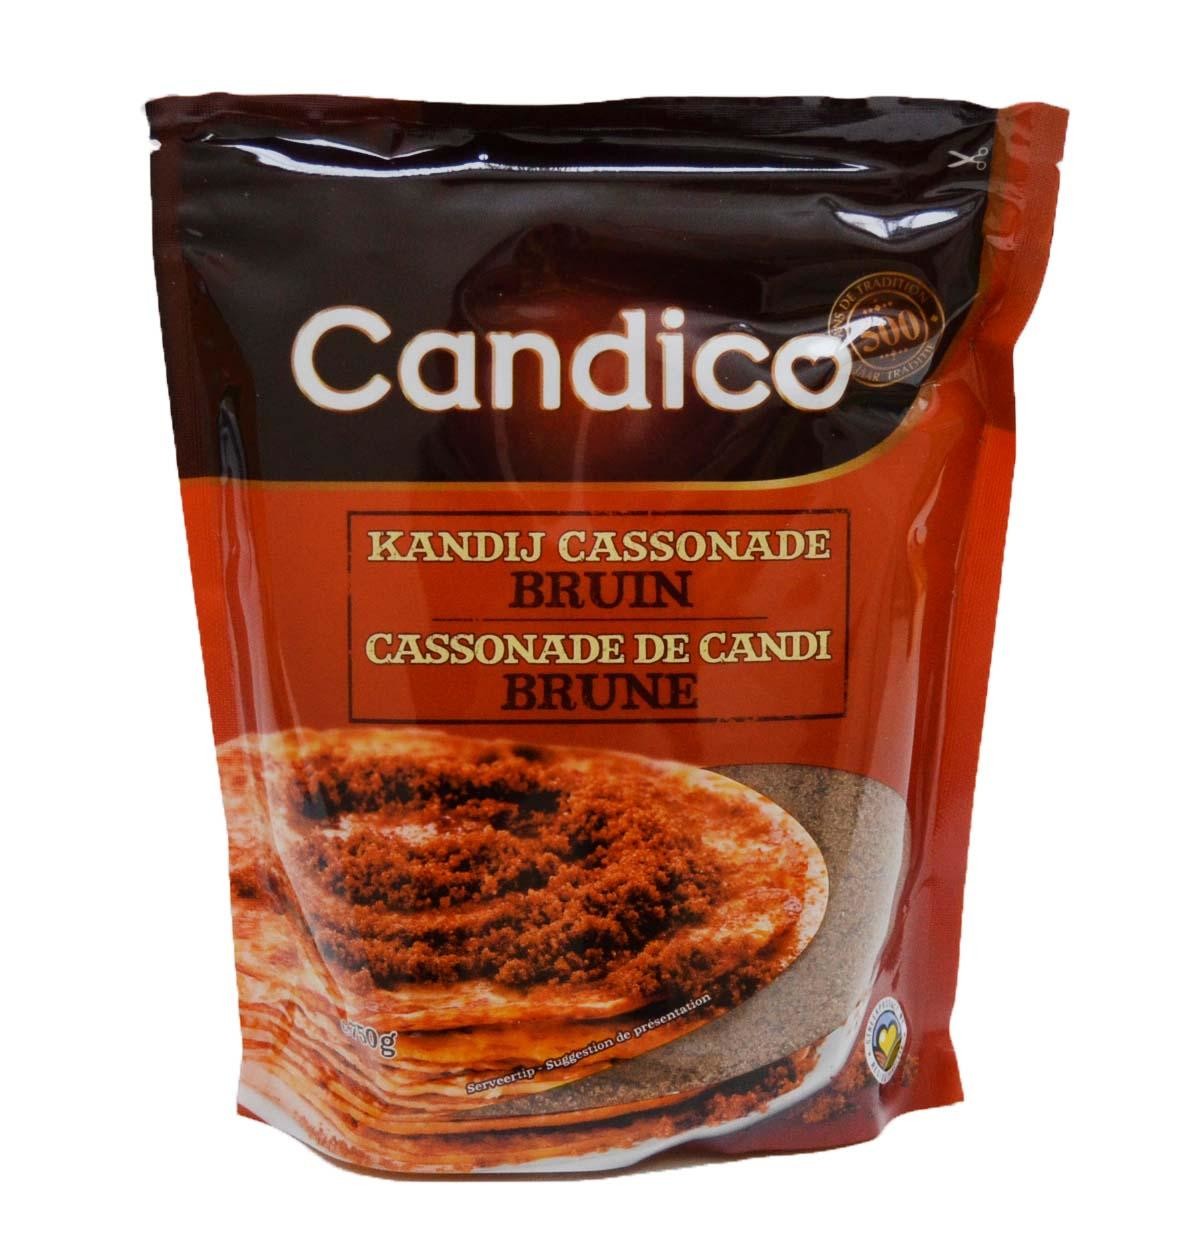 Cassonade donker 1kg candico